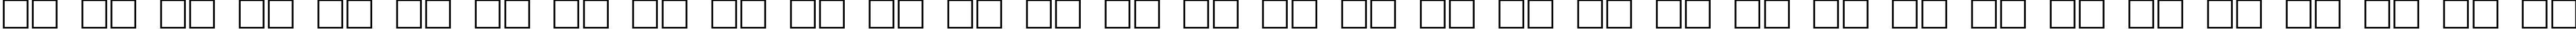 Пример написания русского алфавита шрифтом Kahless